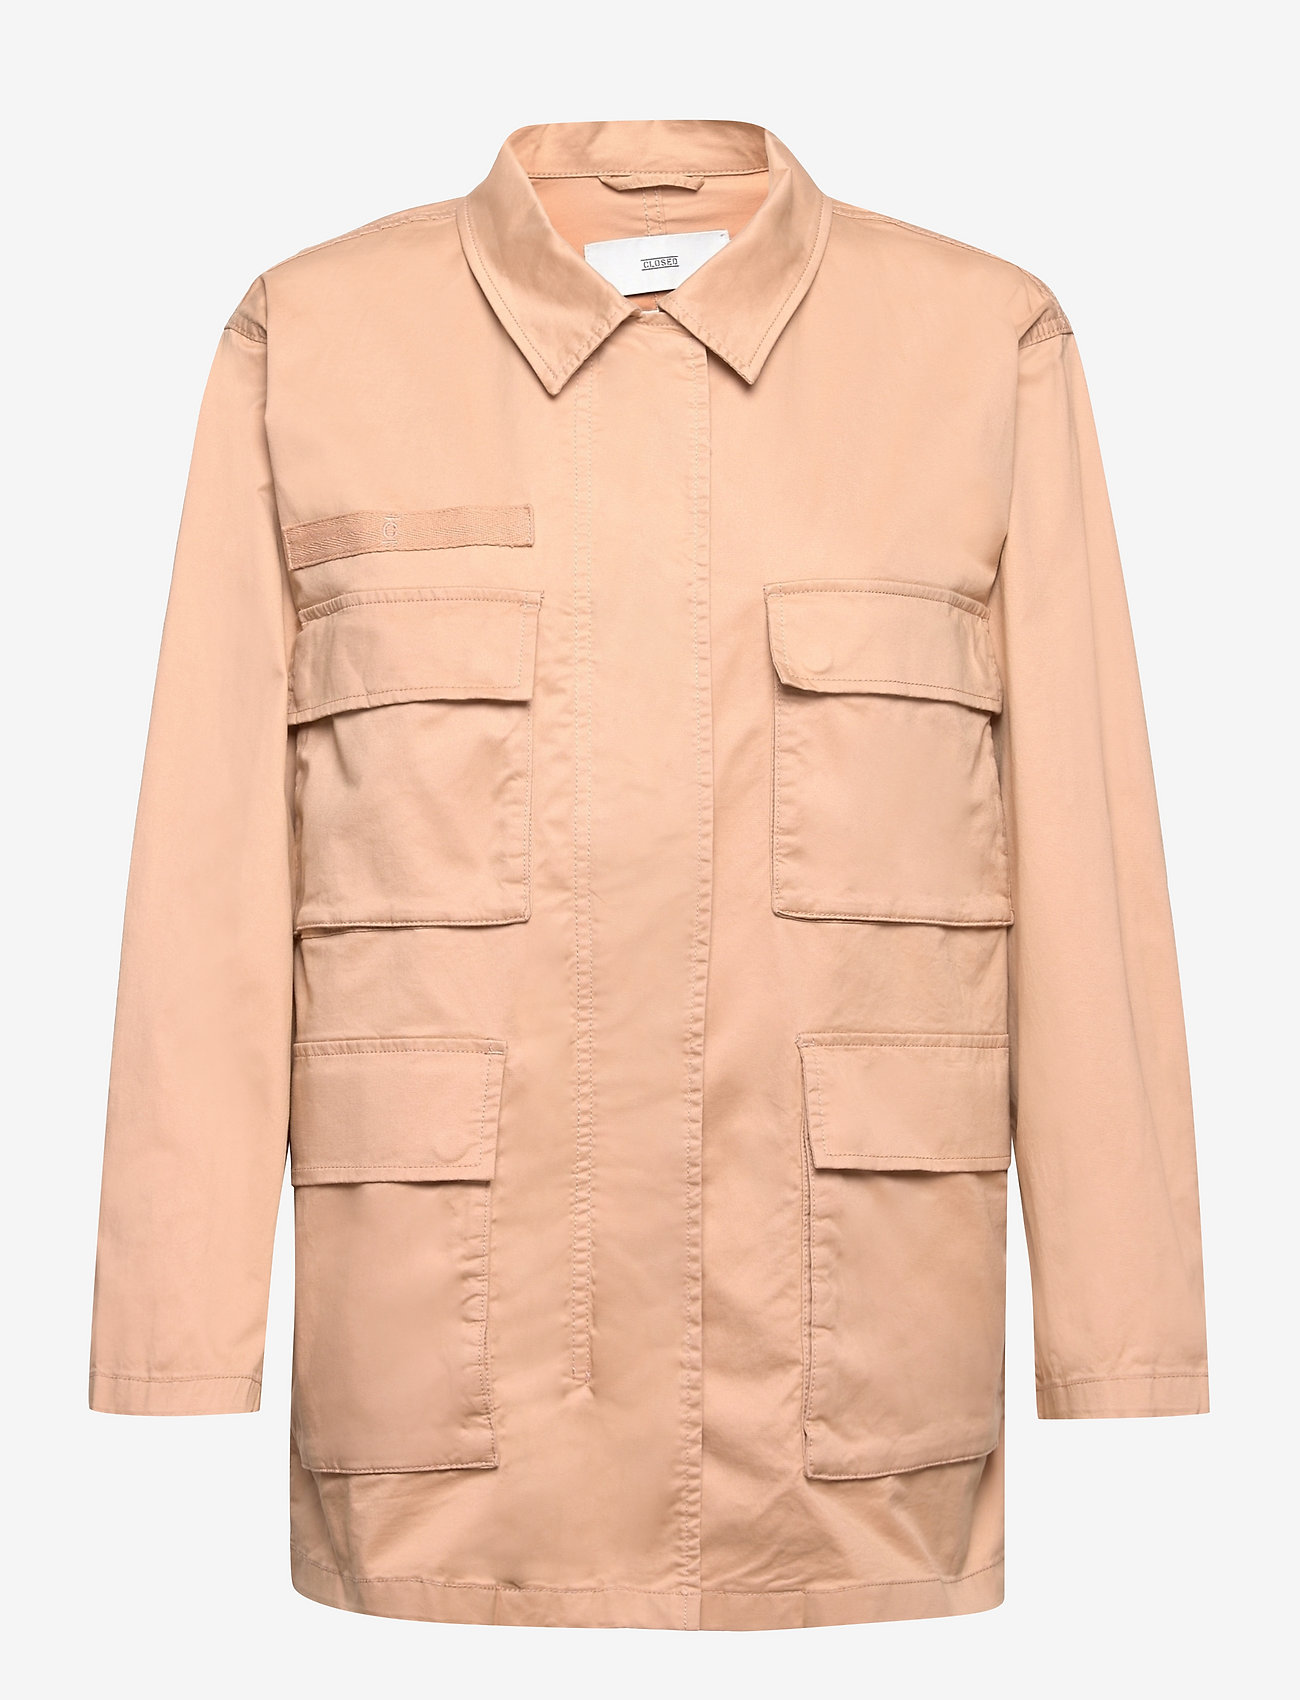 Closed - womens jacket - utility-jakker - sandstone - 0